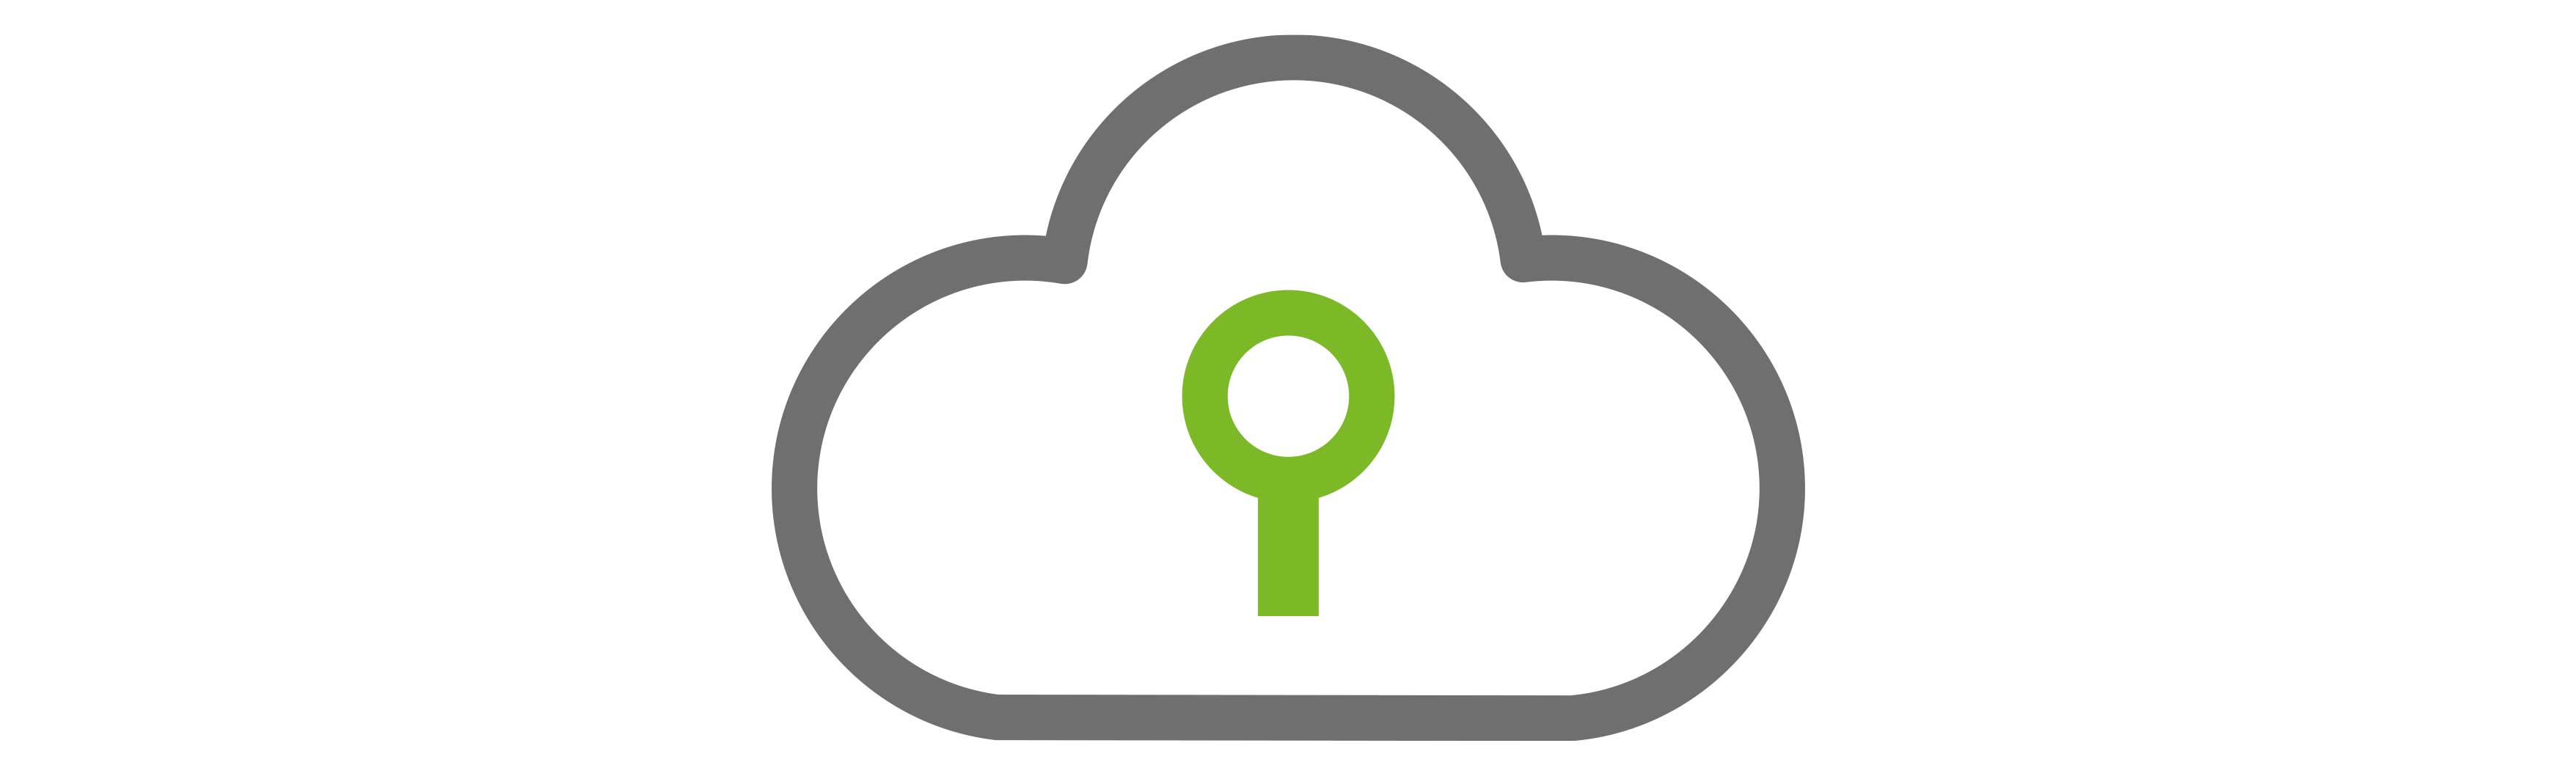 Licencia de copia de seguridad en la nube + 1 Tb de almacenamiento cloud de Valorista para servidor